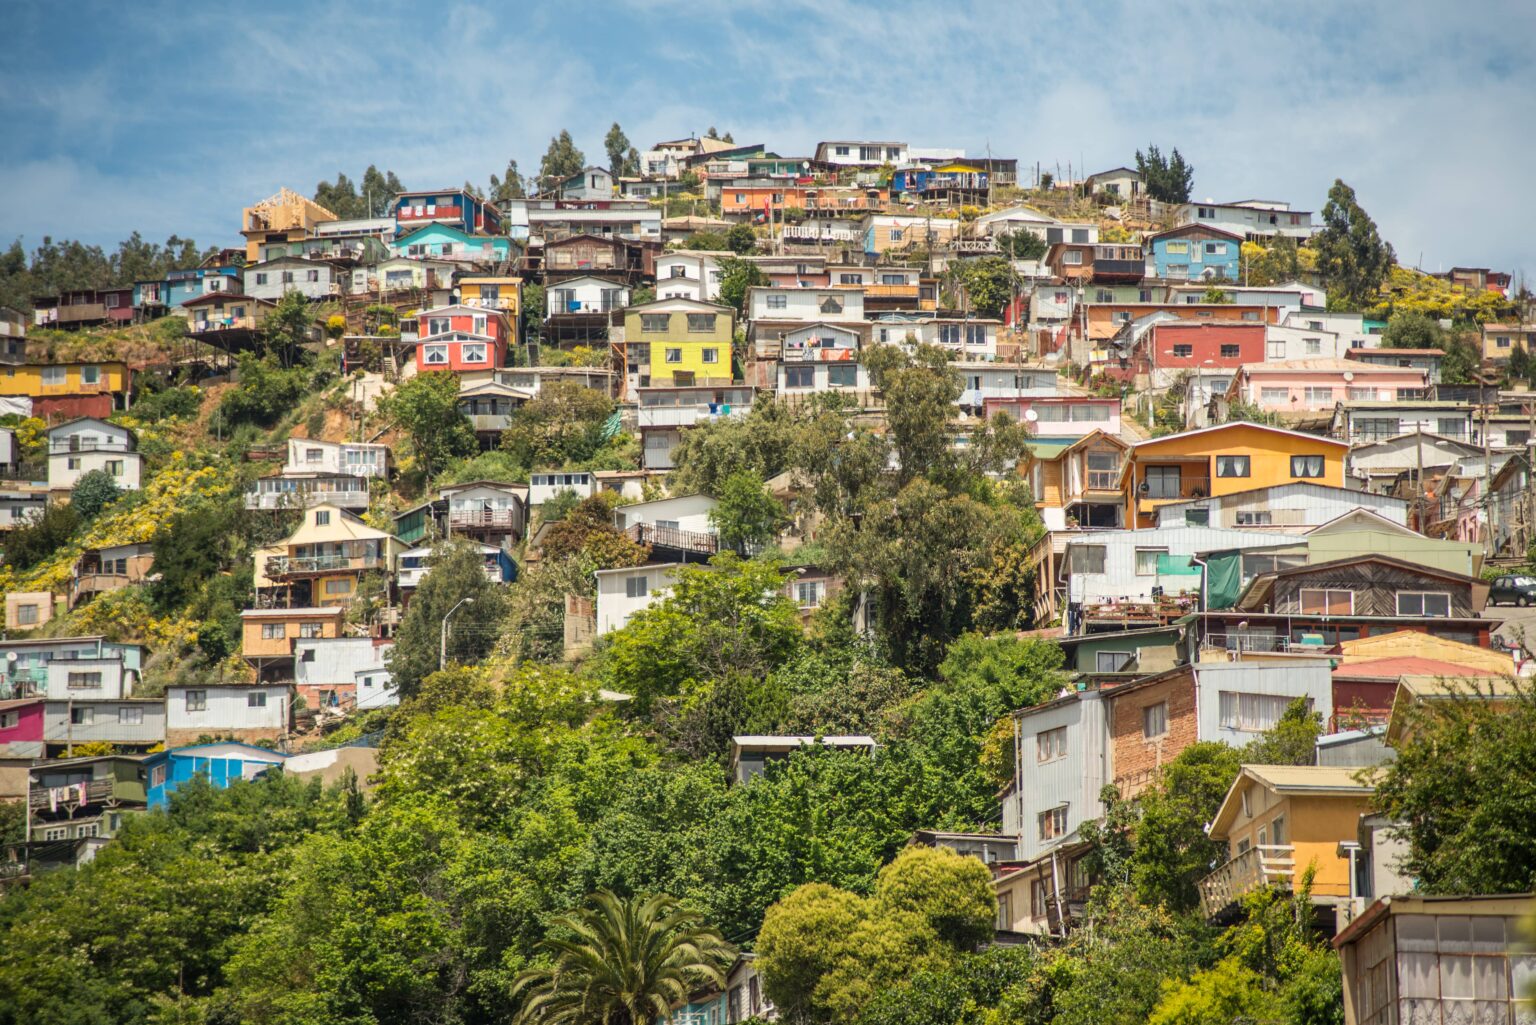 Hillside buildings in Valparaiso